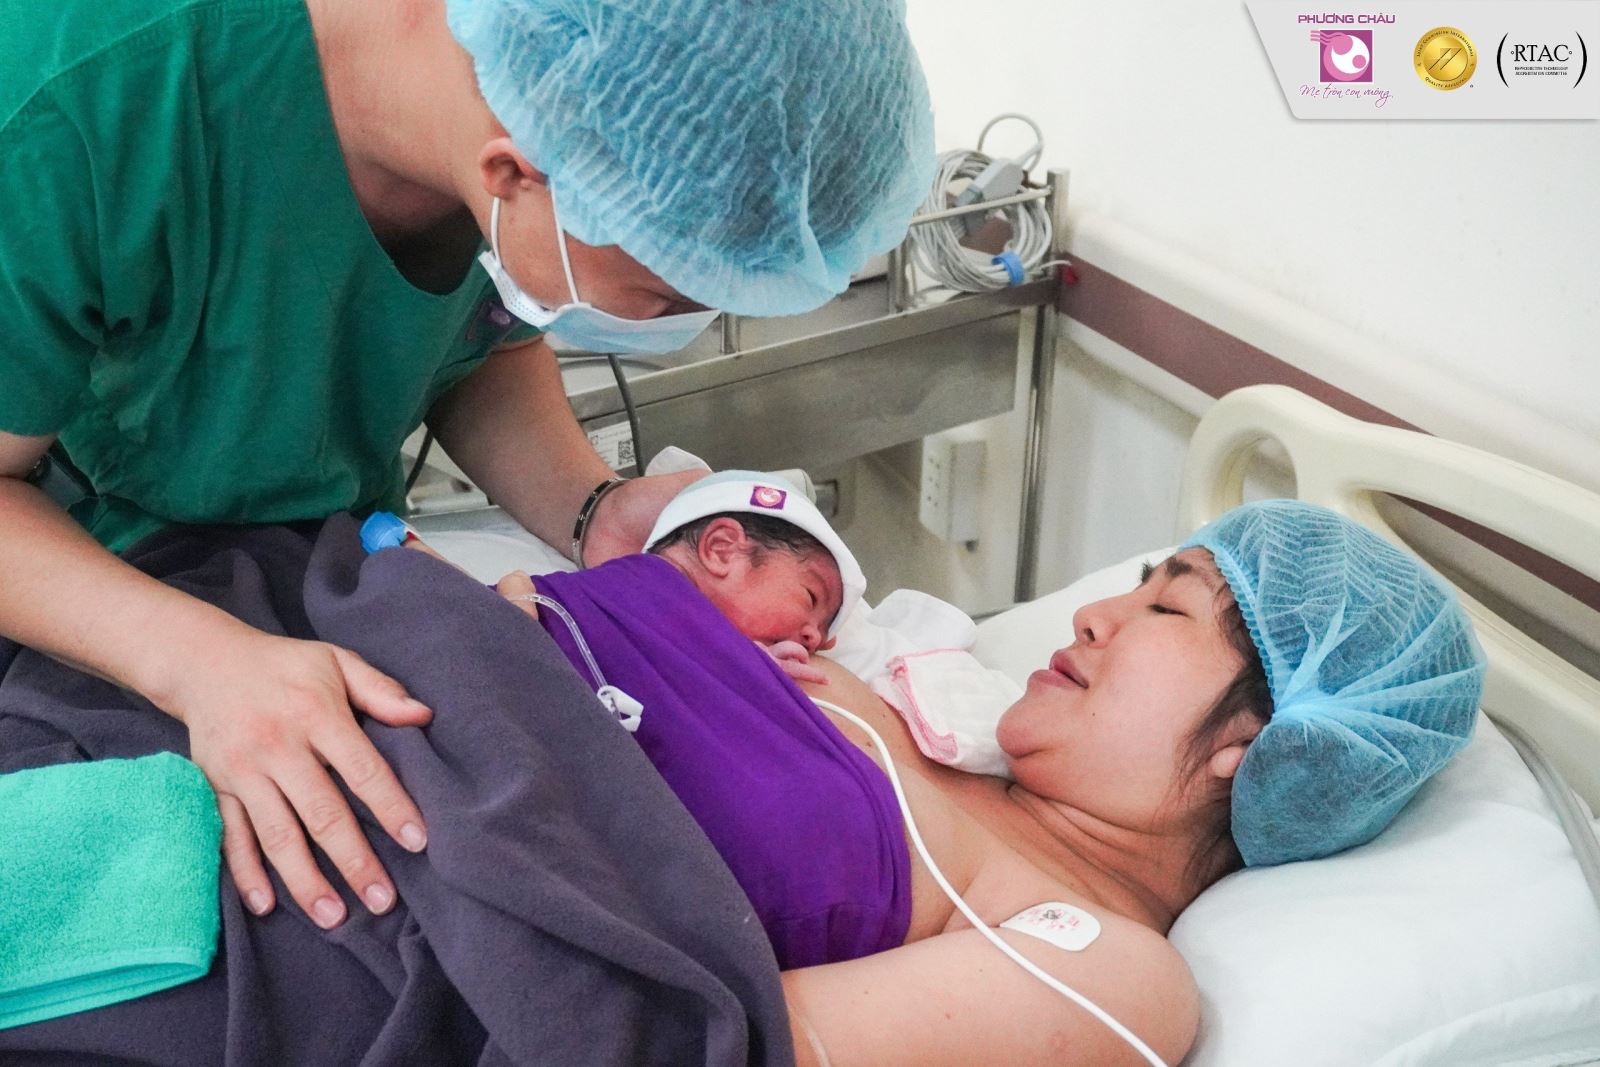 Bệnh viện quốc tế Phương Châu giới thiệu đến các gia đình dịch vụ GÓI SINH với nhiều ưu đãi hấp dẫn. Dễ dàng tiếp cận dịch vụ chăm sóc TIÊU CHUẨN QUỐC TẾ VỚI CHI PHÍ ĐI SINH ĐƯỢC DỰ TRÙ và nhiều dịch vụ tiện ích khác, các mẹ bầu an tâm tận hưởng một hành trình làm mẹ nhàn tênh, hạnh phúc 